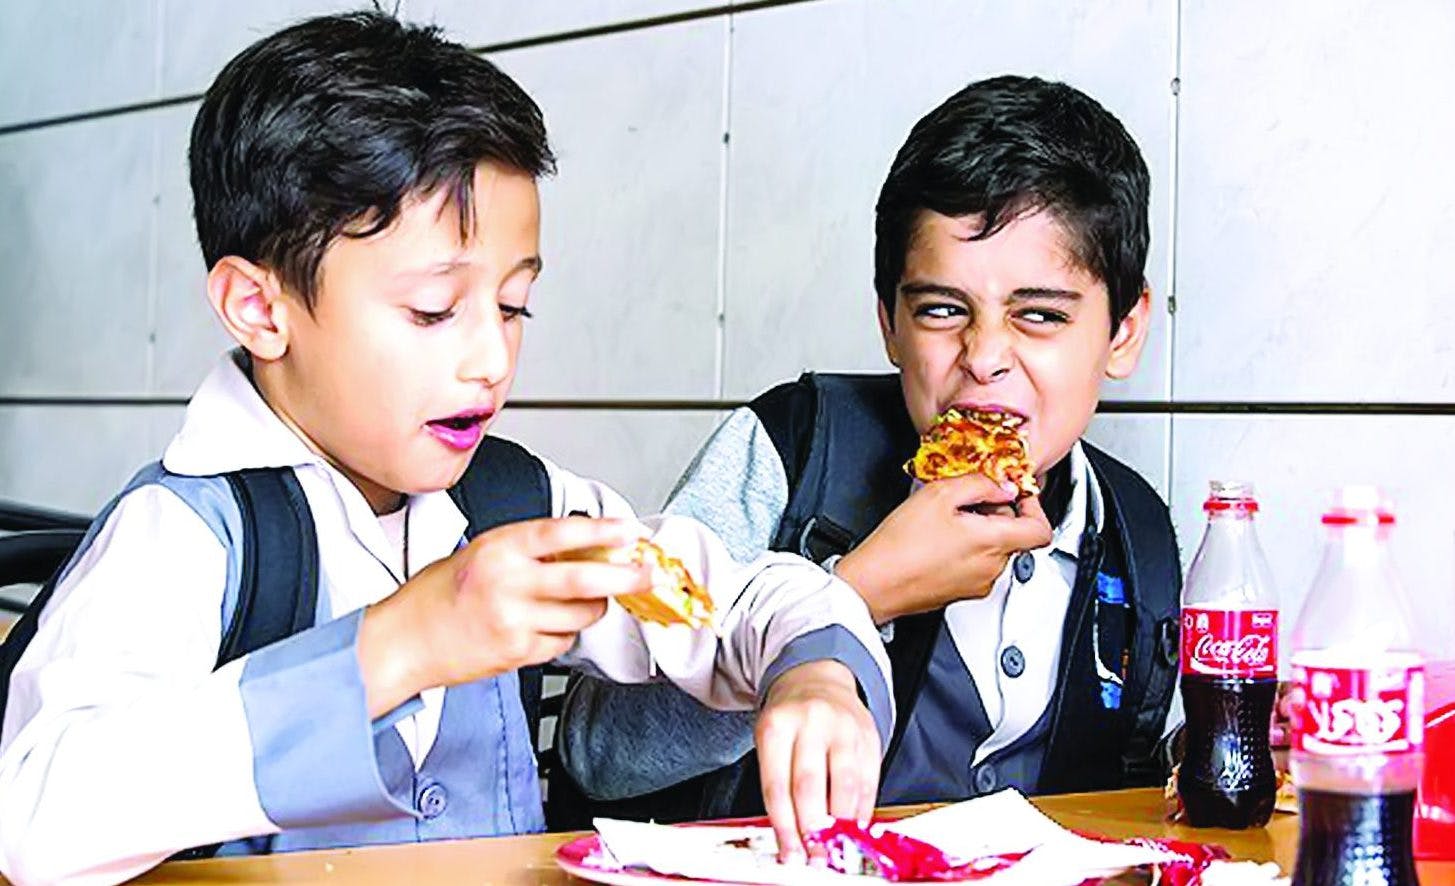 دو کودک در حال خوردن پیتزا و نوشابه کوکاکولا